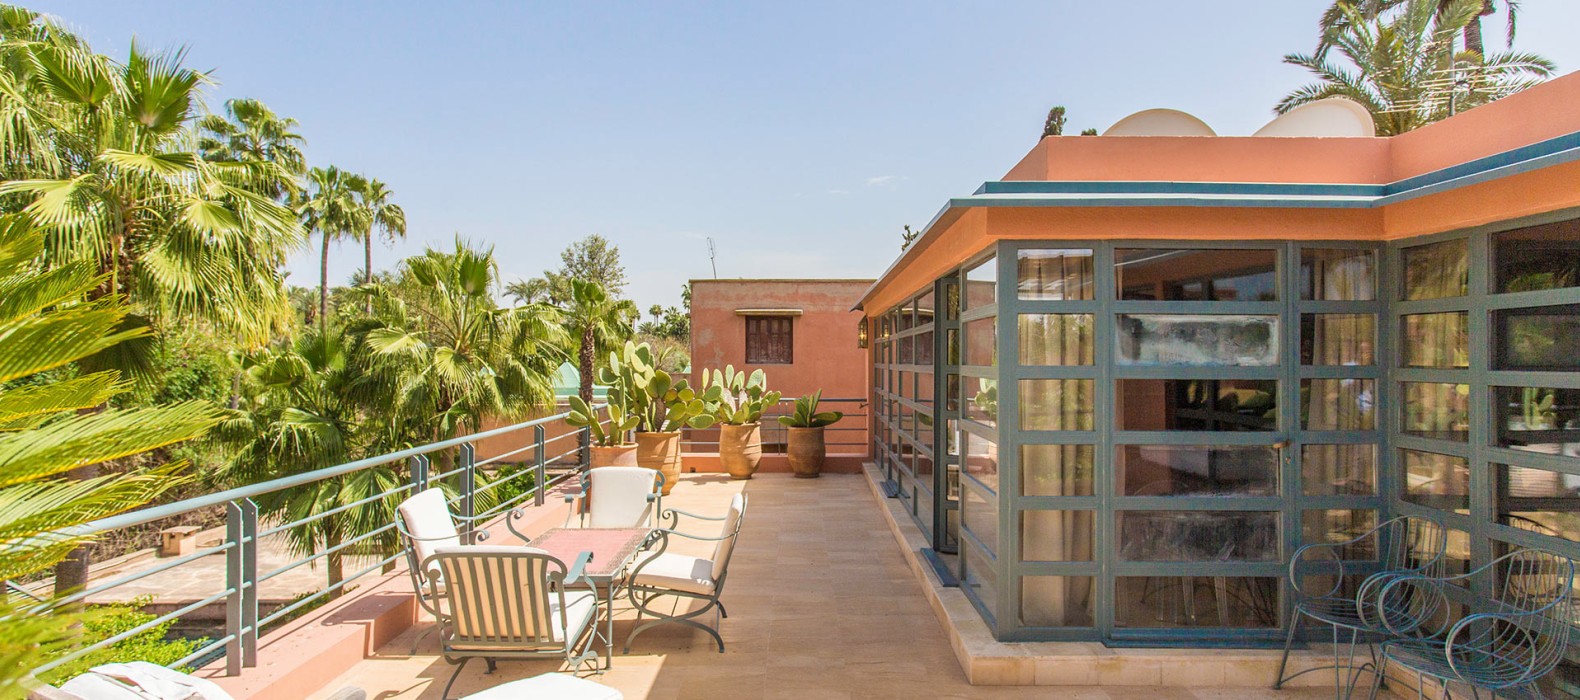 Rooftop view of Villa Nour in Marrakech